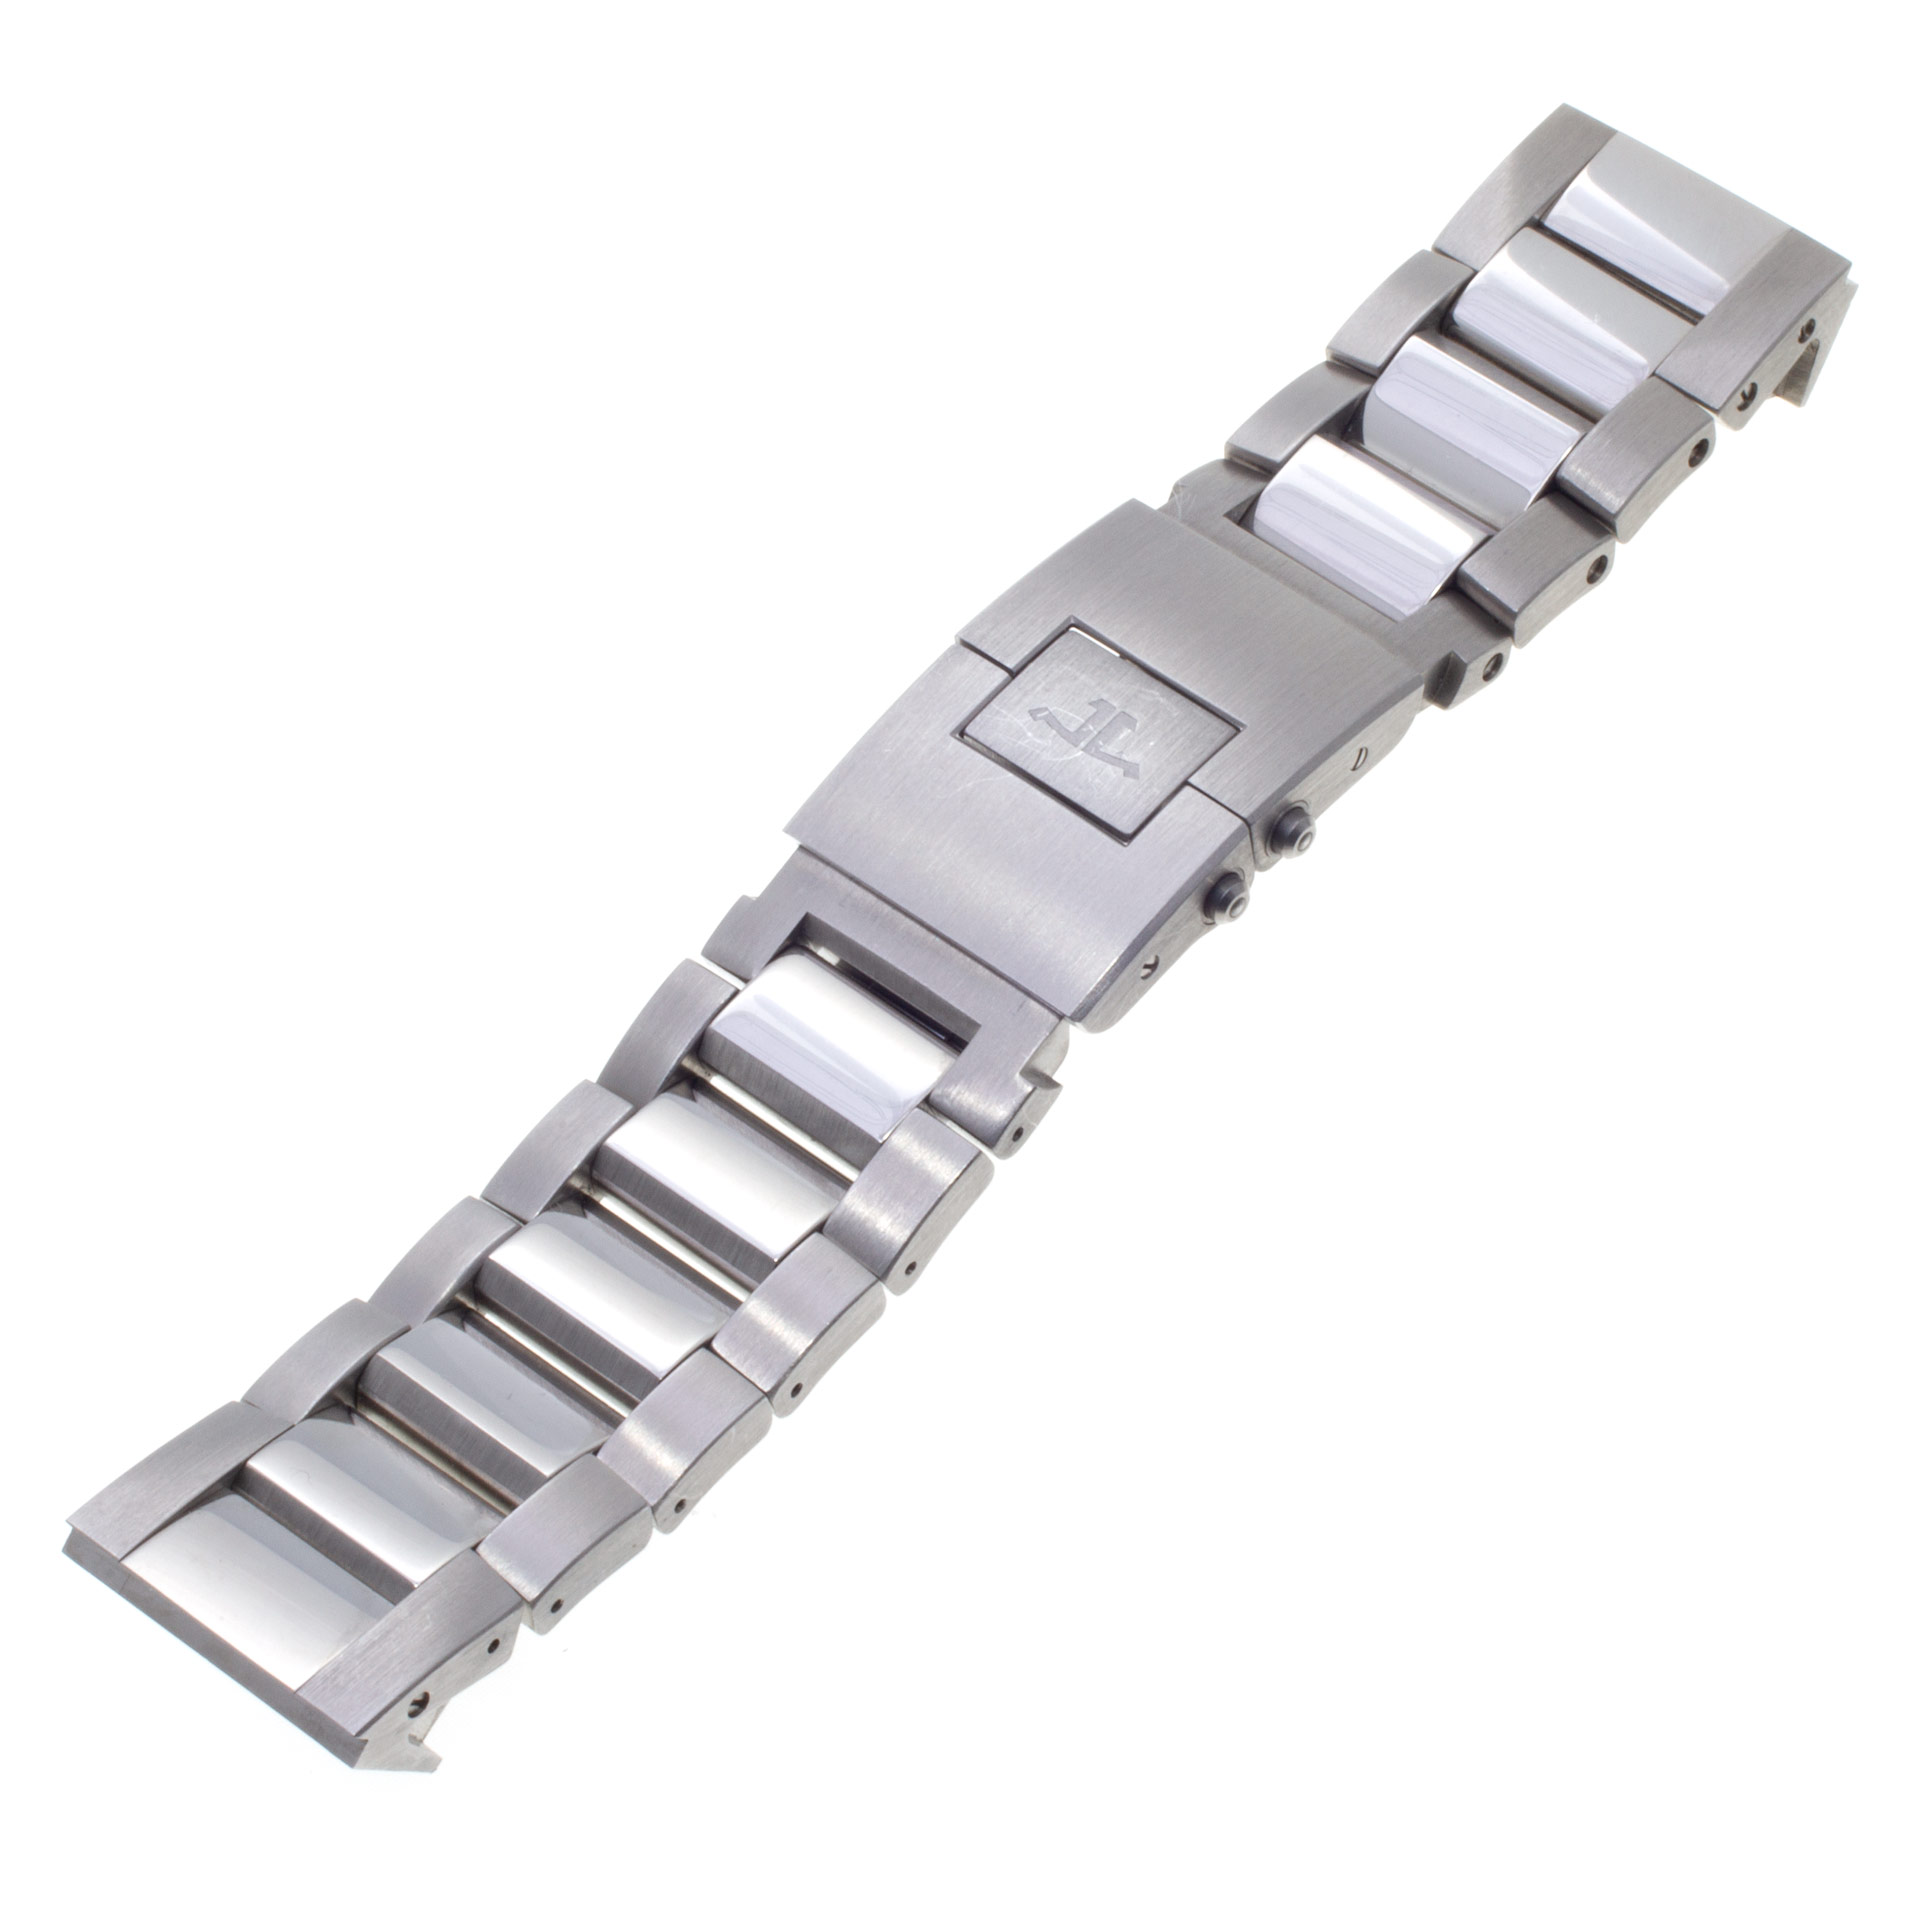 Jaeger LeCoultre Squadra bracelet in stainless steel. Length: 4.75". (22mm)